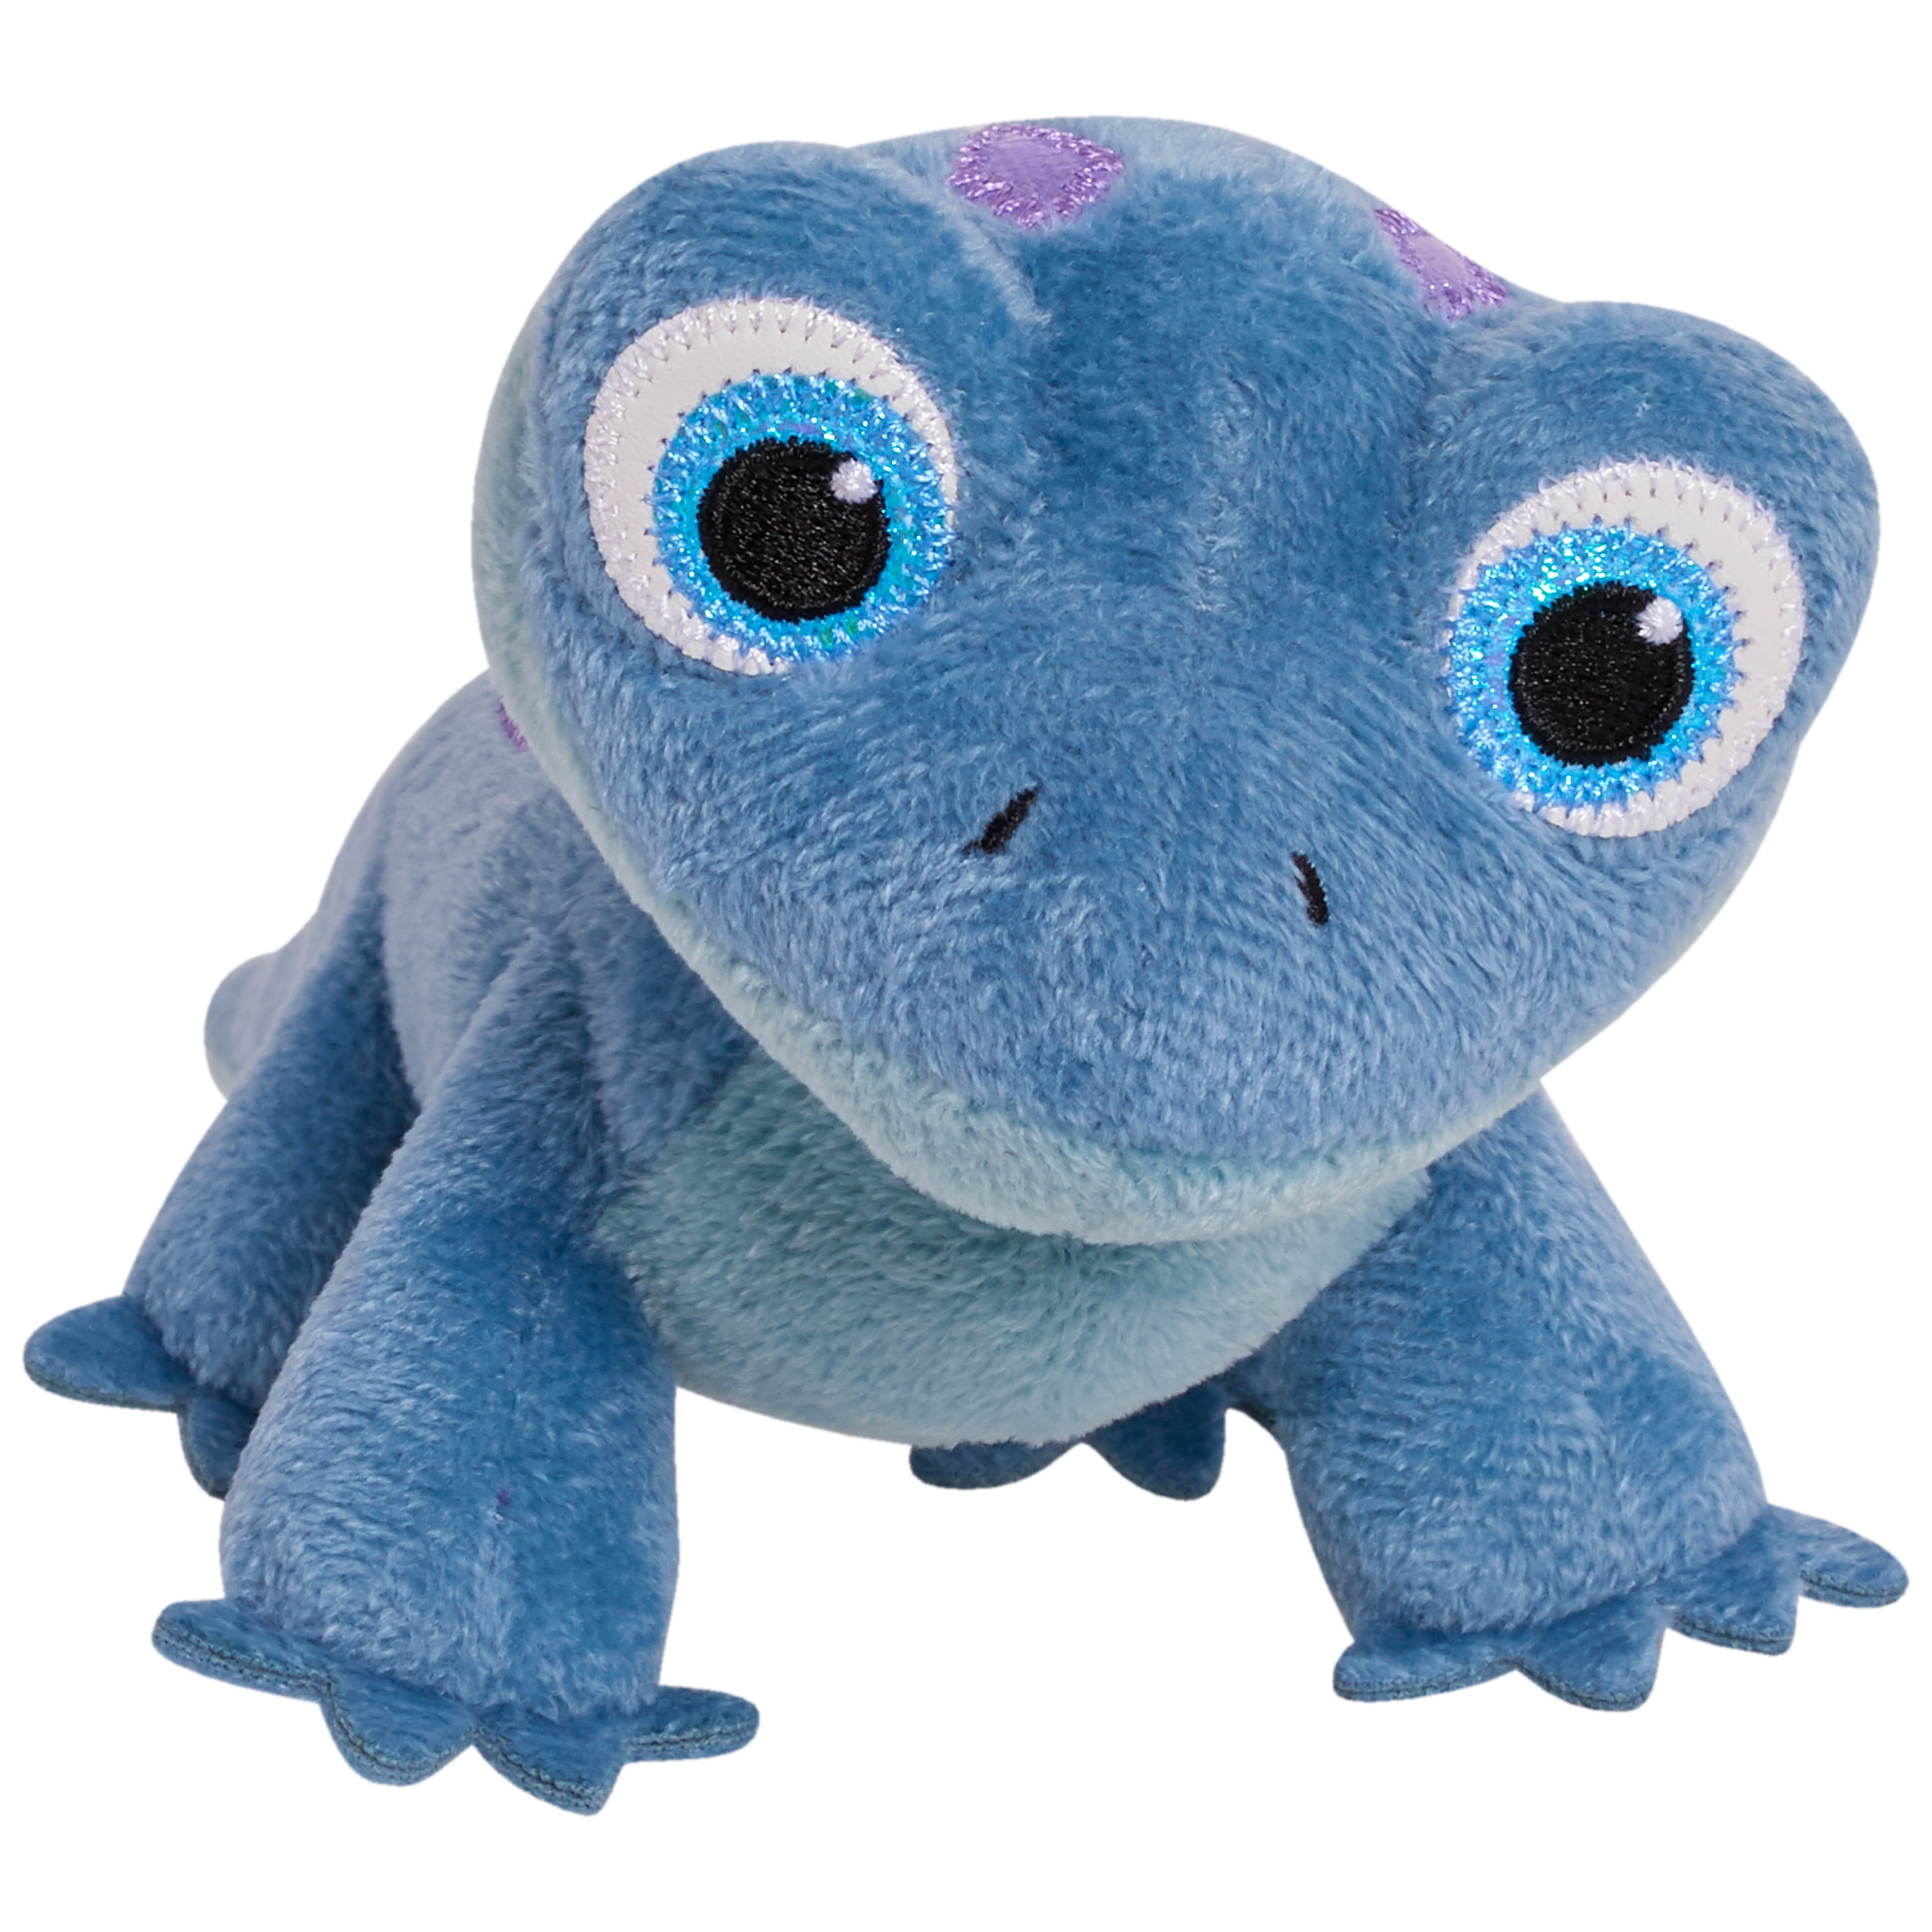 Christmas Gifts Frozen 2 Salamander Plush Stuffed Toy 6" Small Kids Cute Animal 